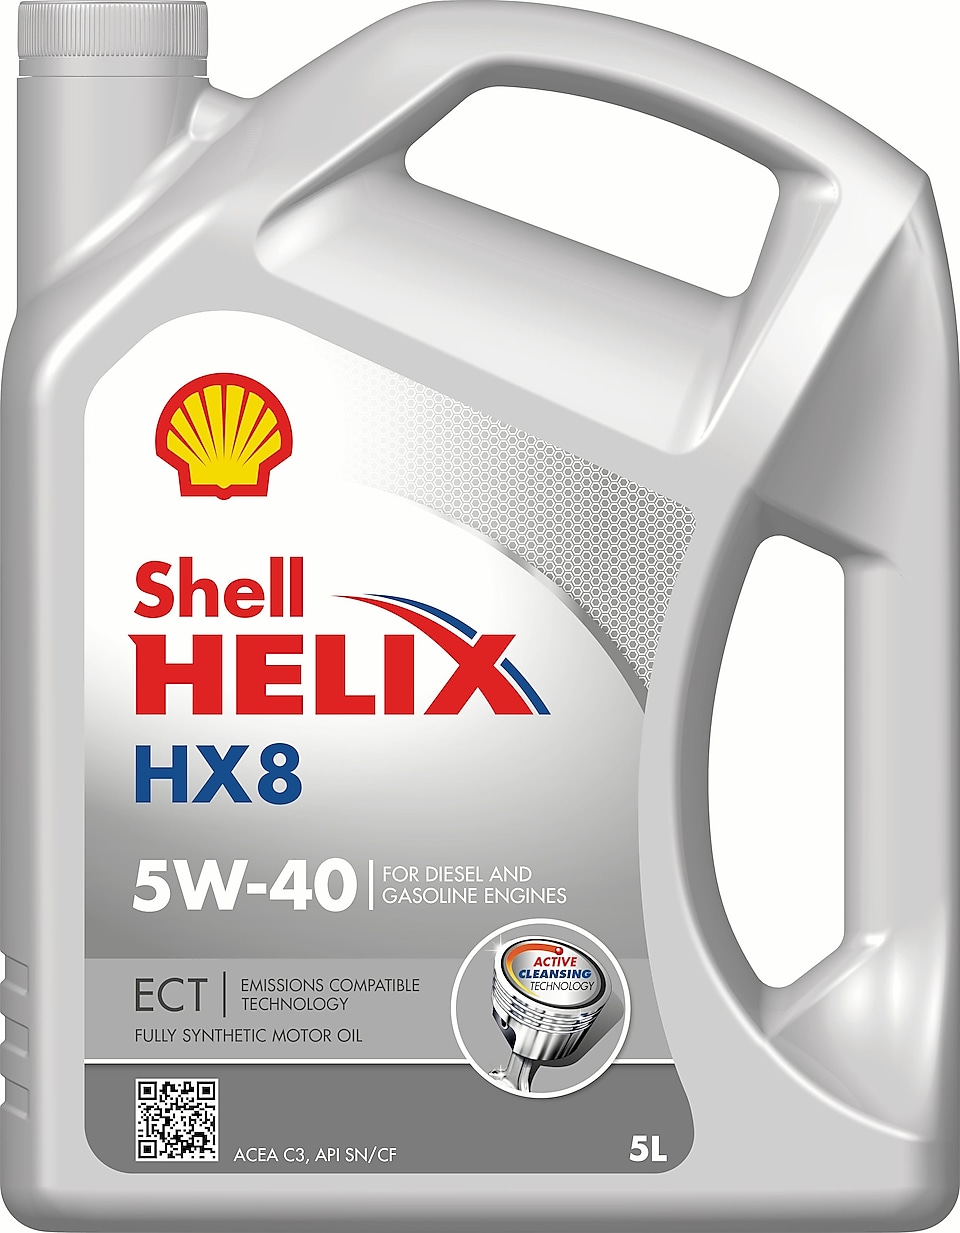  Shell Helix HX8 ECT 5W-40